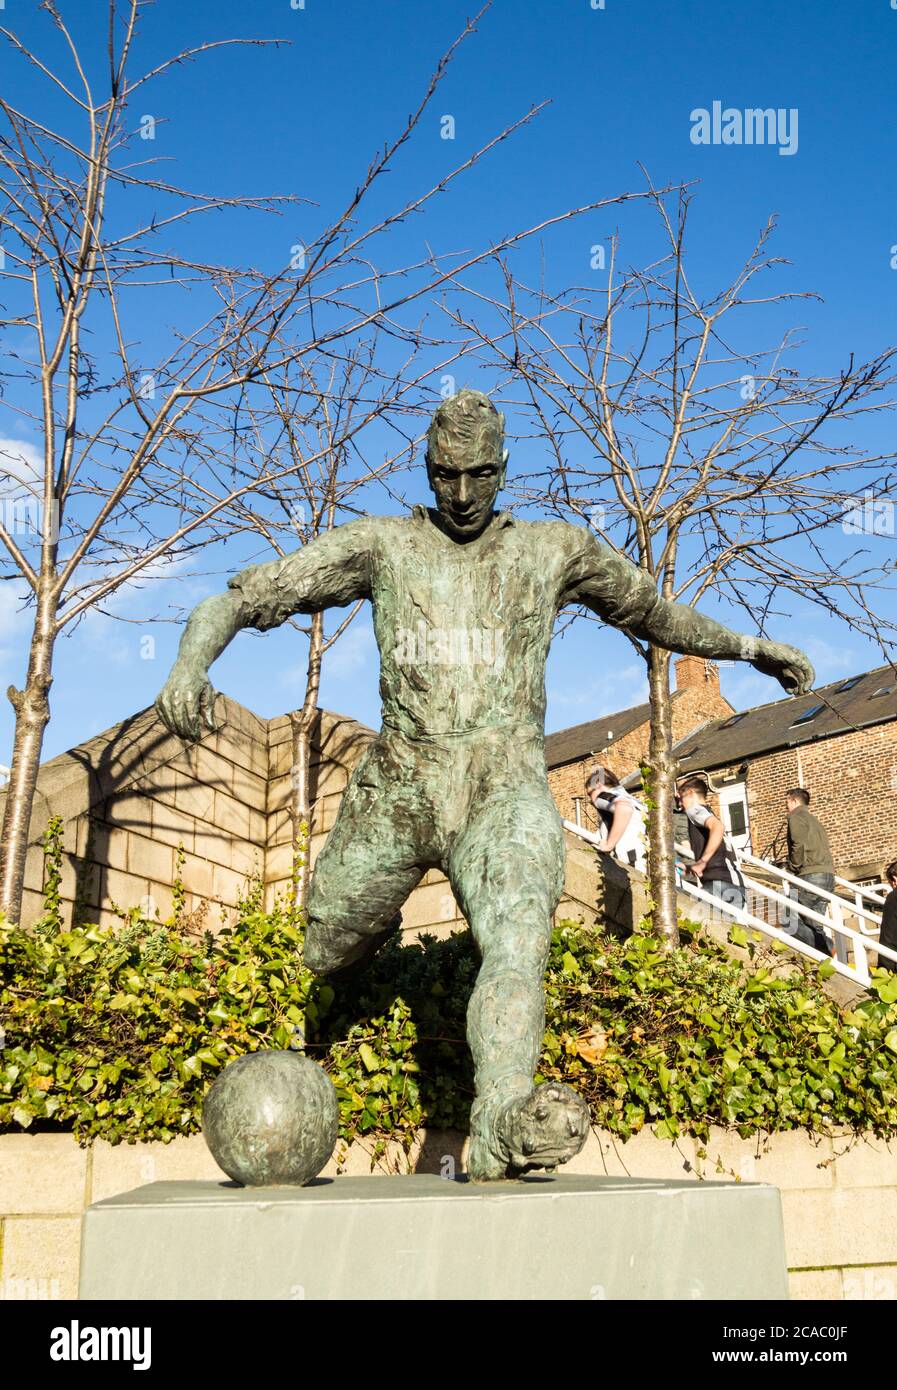 Estatua de la leyenda del fútbol de Newcastle United Jackie Milburn, 'Wor Jackie' (nuestro Jackie) en Newcastle upon Tyne, Inglaterra, Reino Unido Foto de stock